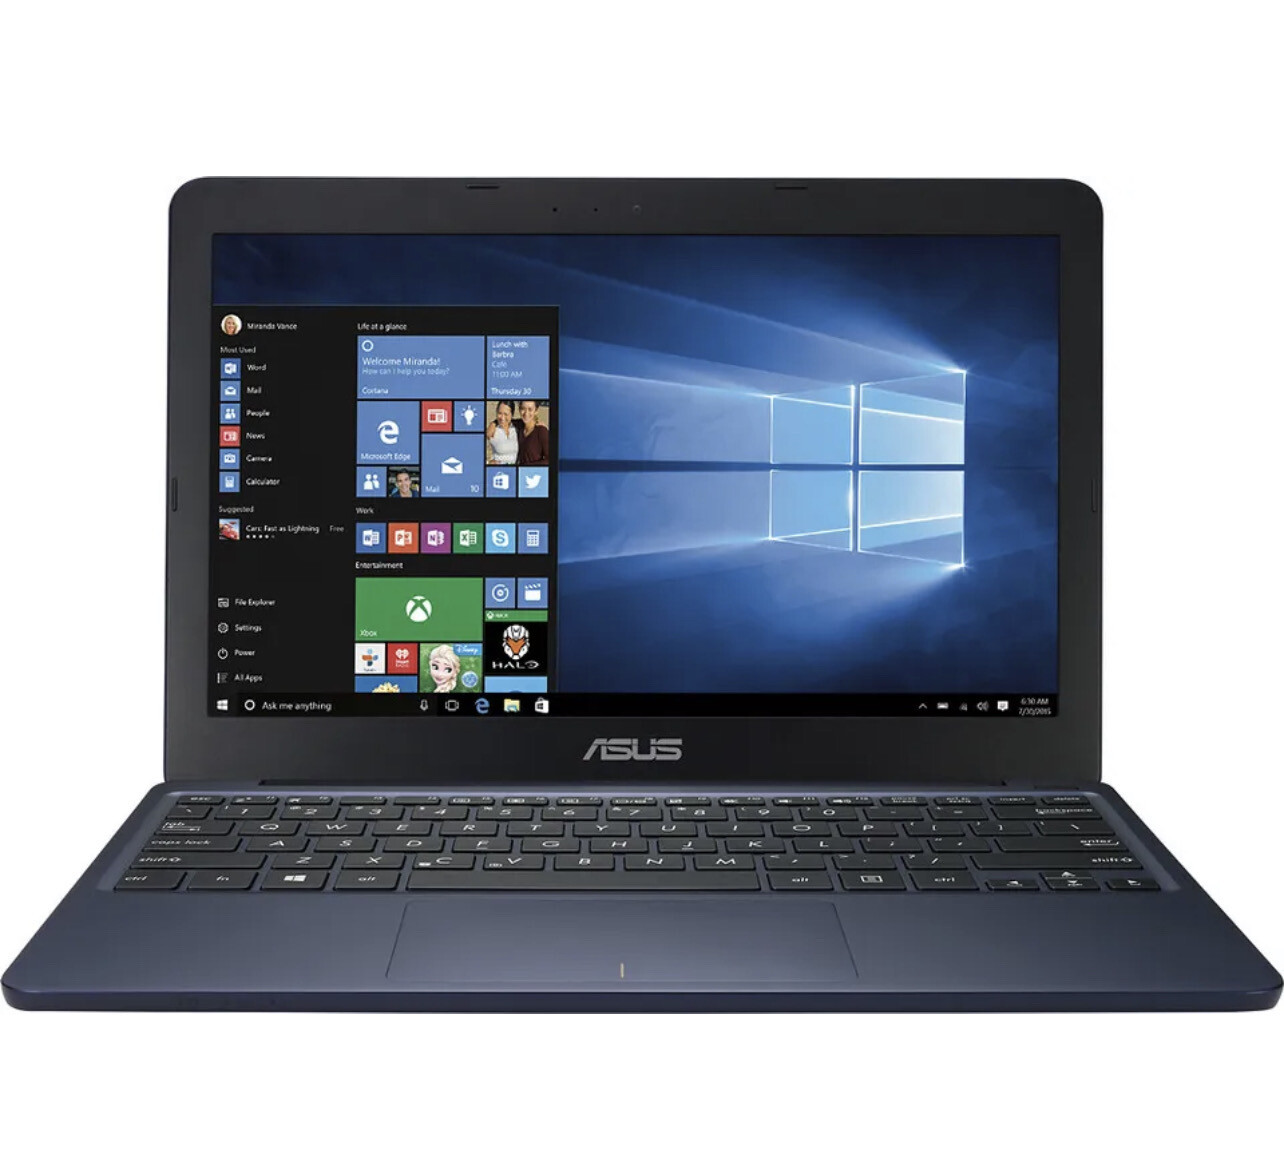 ASUS X205TA 11.6" Laptop- Intel Quad Core 2GB RAM 32GB SSD Web Cam Windows 10